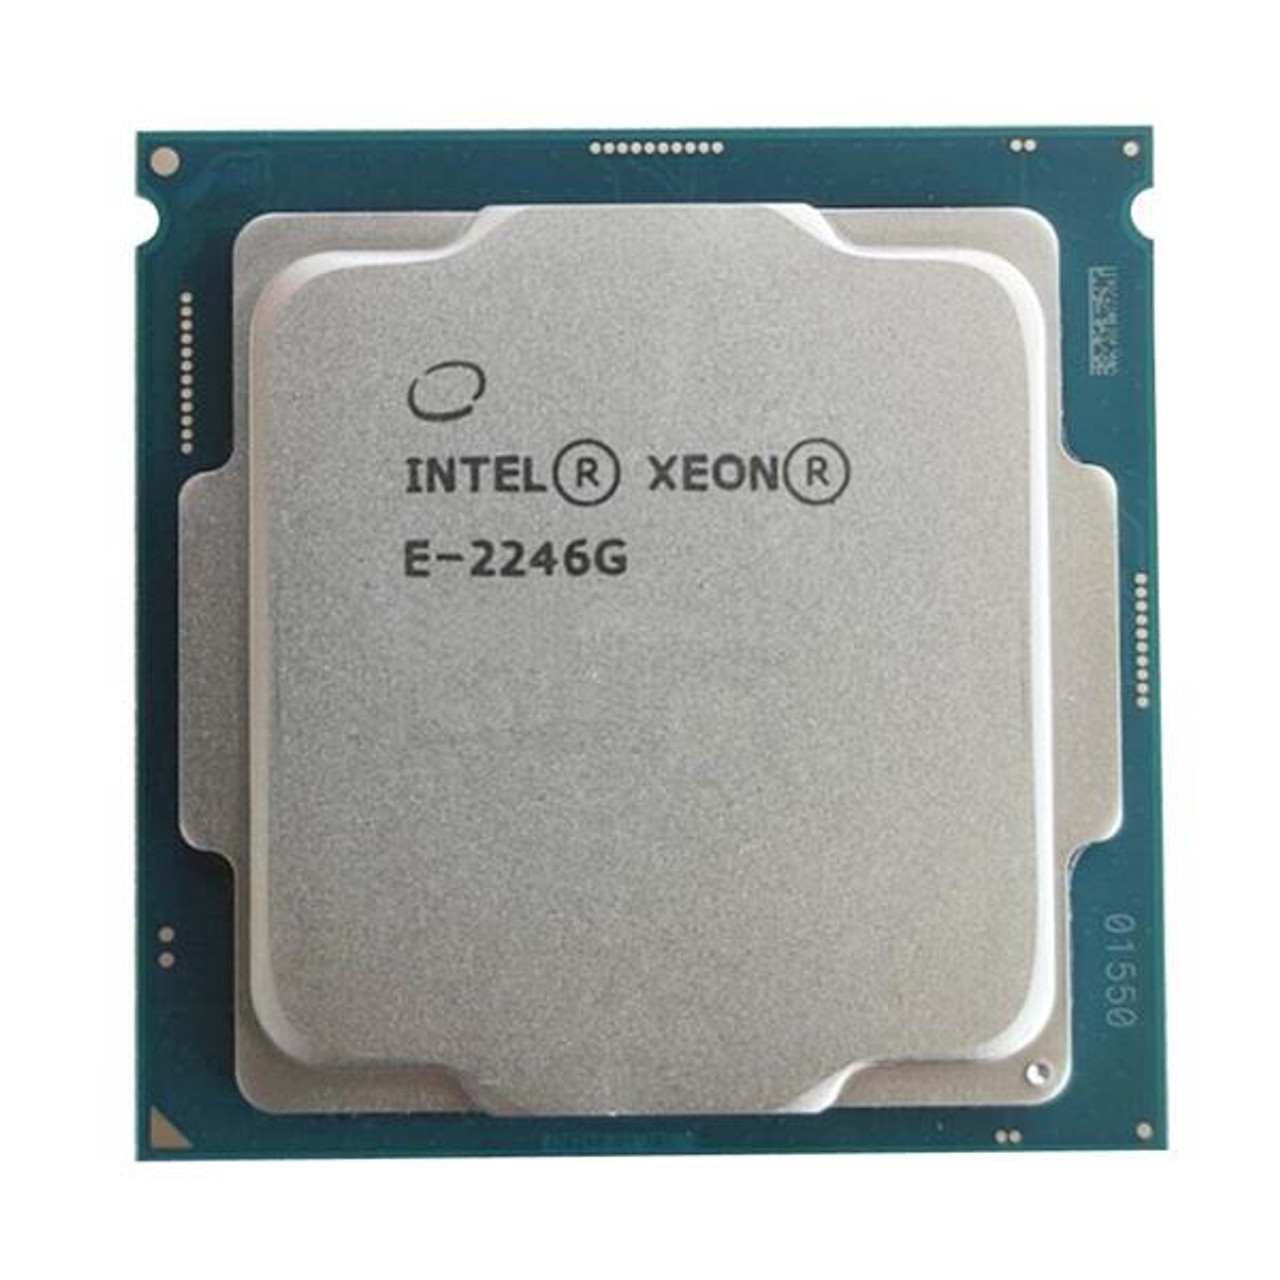 SuperMicro 3.60GHz 12MB L3 Cache Socket FCLGA1151 Intel Xeon E-2246G 6-Core Processor Upgrade